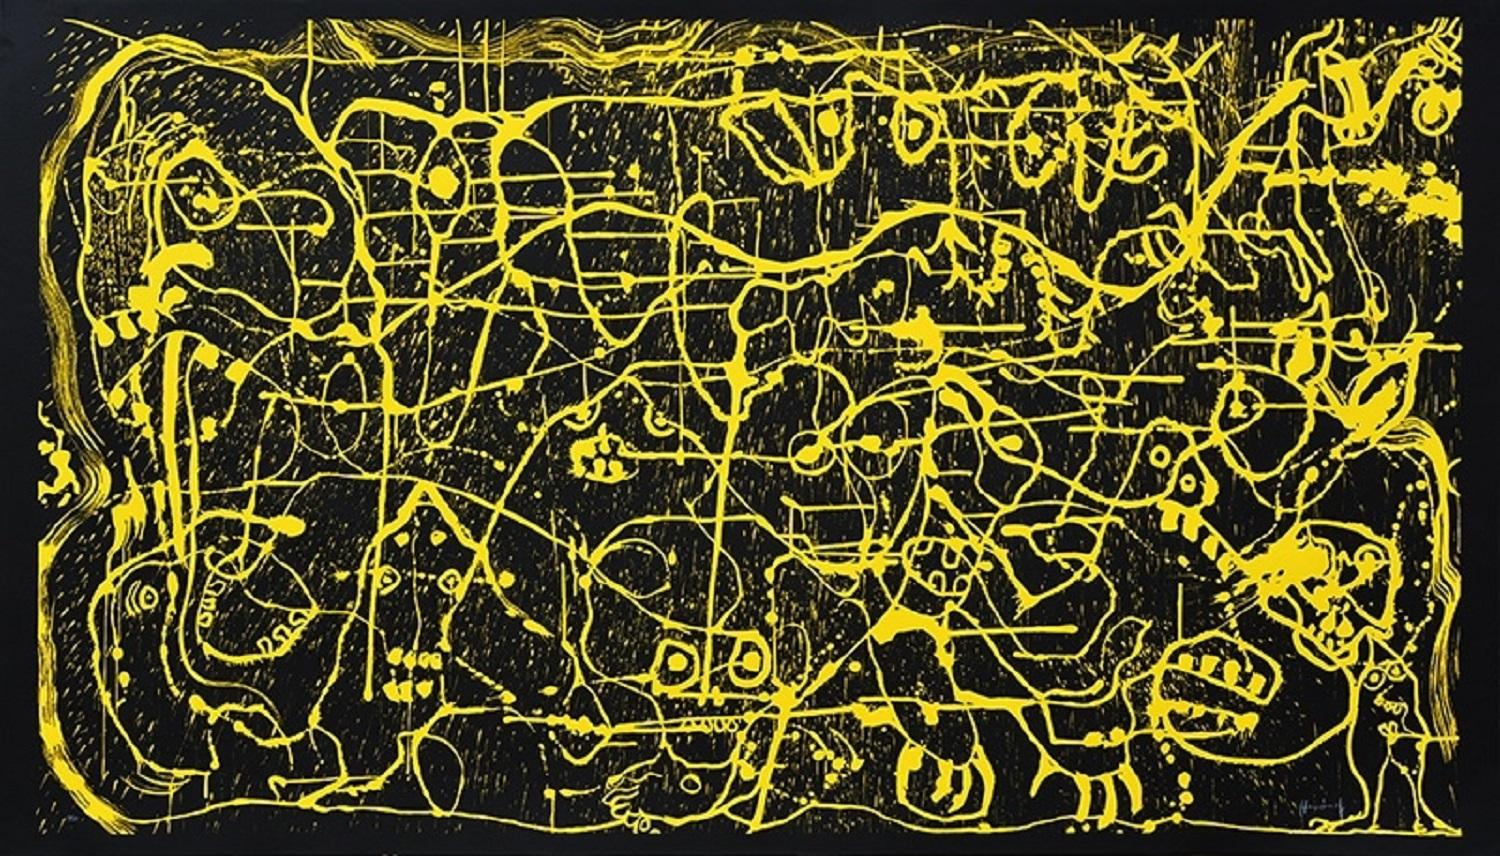 Sergio Hernández (Mexiko, 1957)
Ohne Titel", 2016
Holzschnitt auf Papier
46,9 x 82,7 Zoll (119 x 210 cm)
Auflage von 30 Stück























